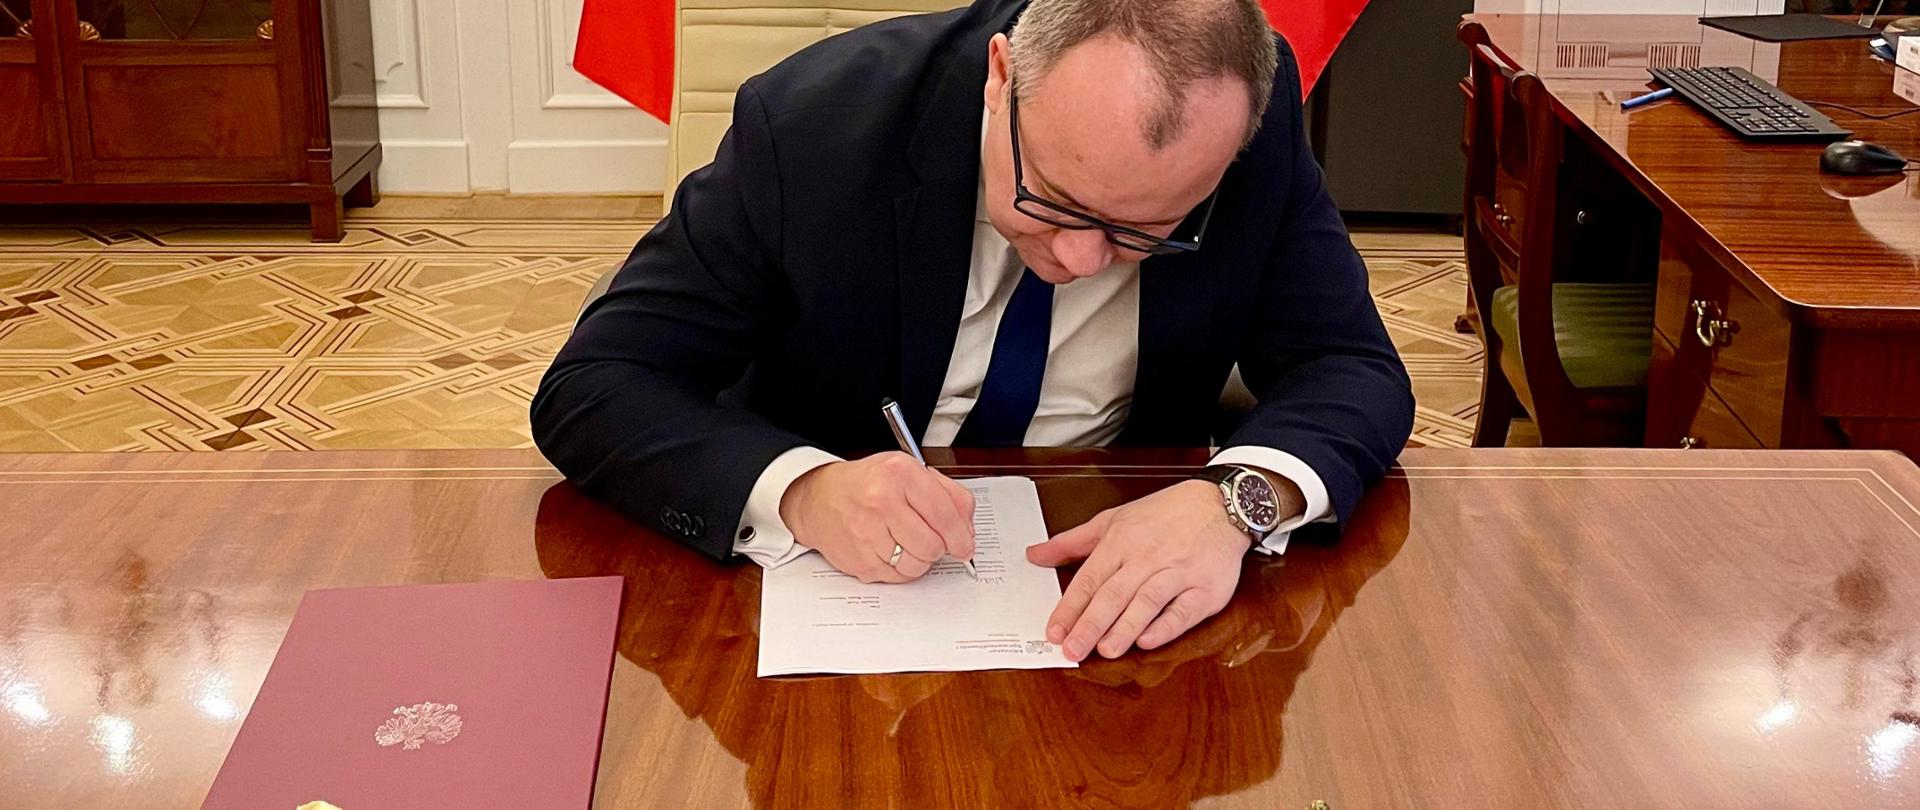 Minister Sprawiedliwości skierował do Premiera RP wniosek o przystąpienie Polski do Prokuratury Europejskiej